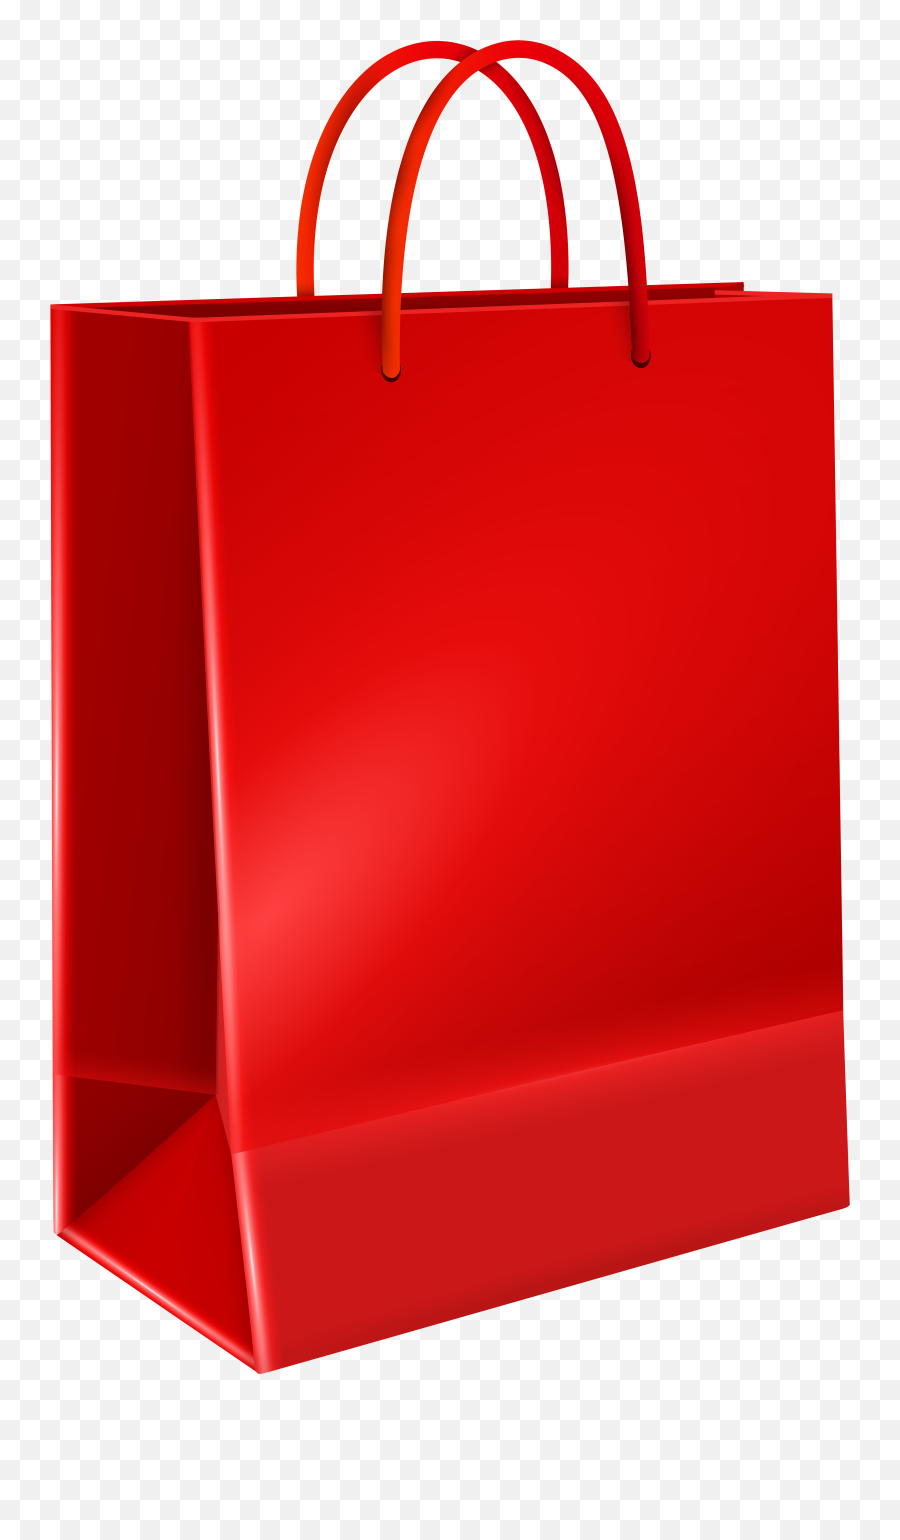 Red Gift Bag Png U0026 Free Bagpng Transparent Images - Christmas Gift Bag Transparent Background,Gift Transparent Background